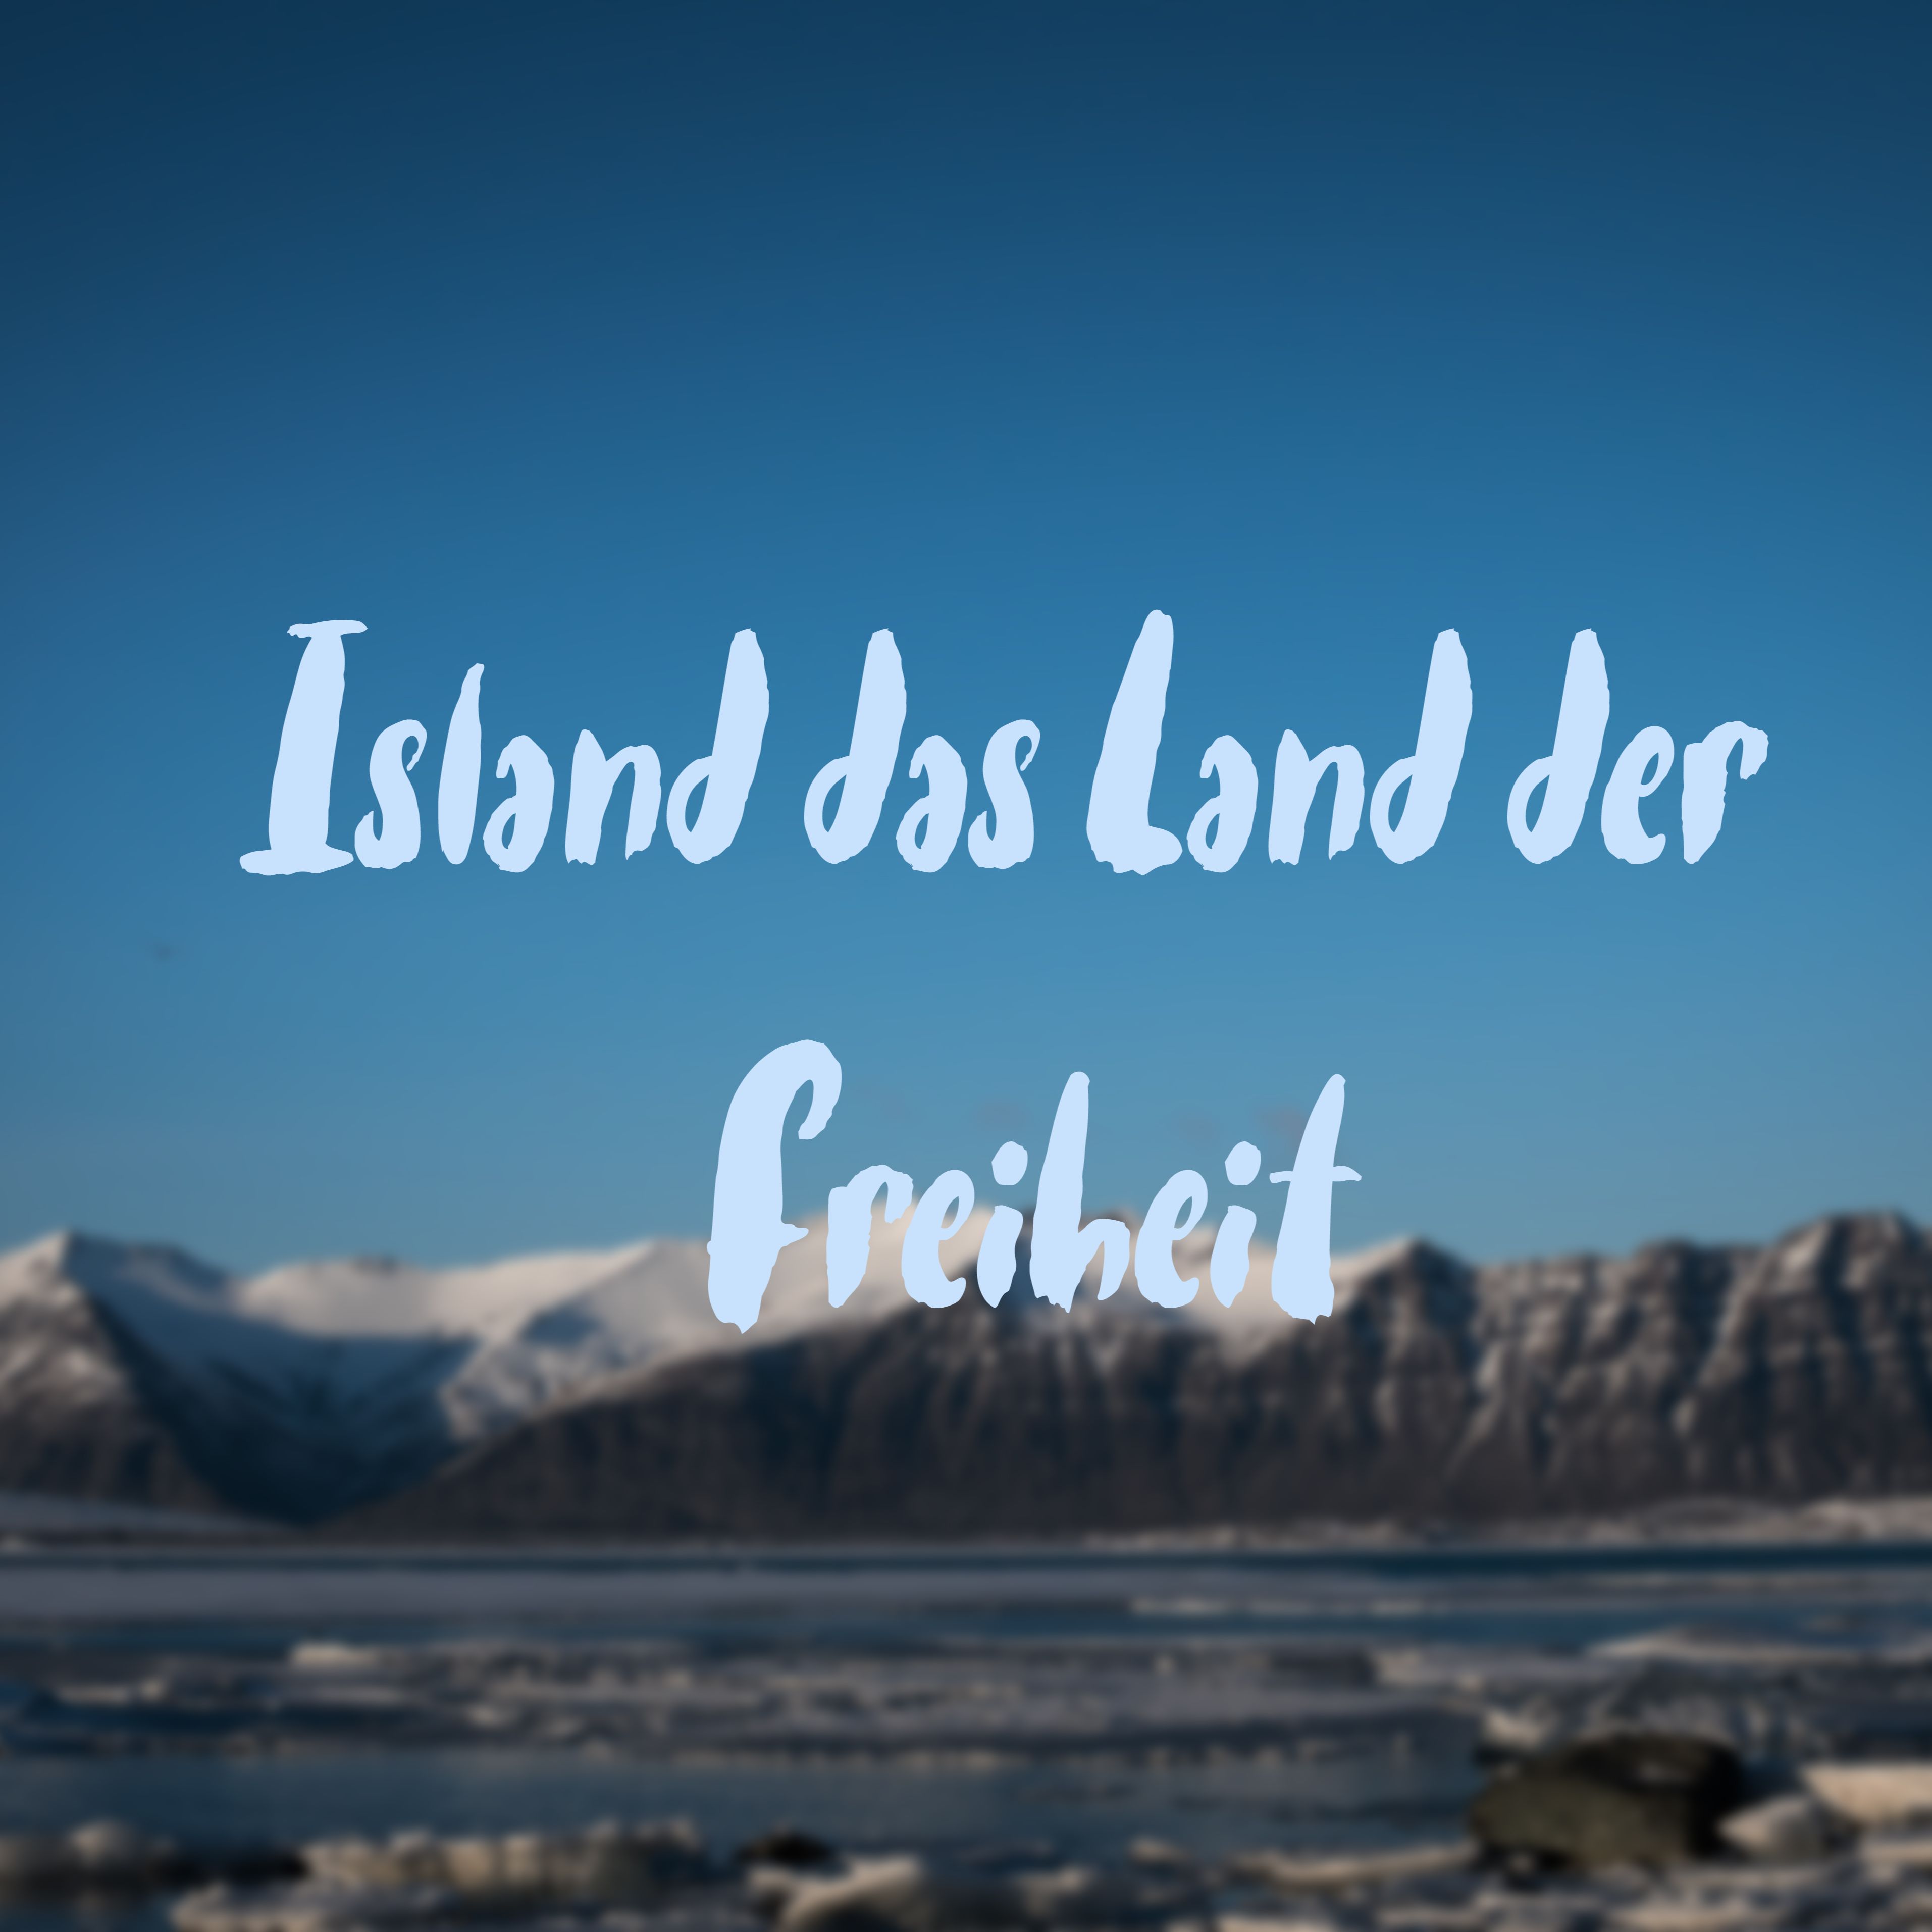 Island das Land der Freiheit #Reiseblog Teil 2